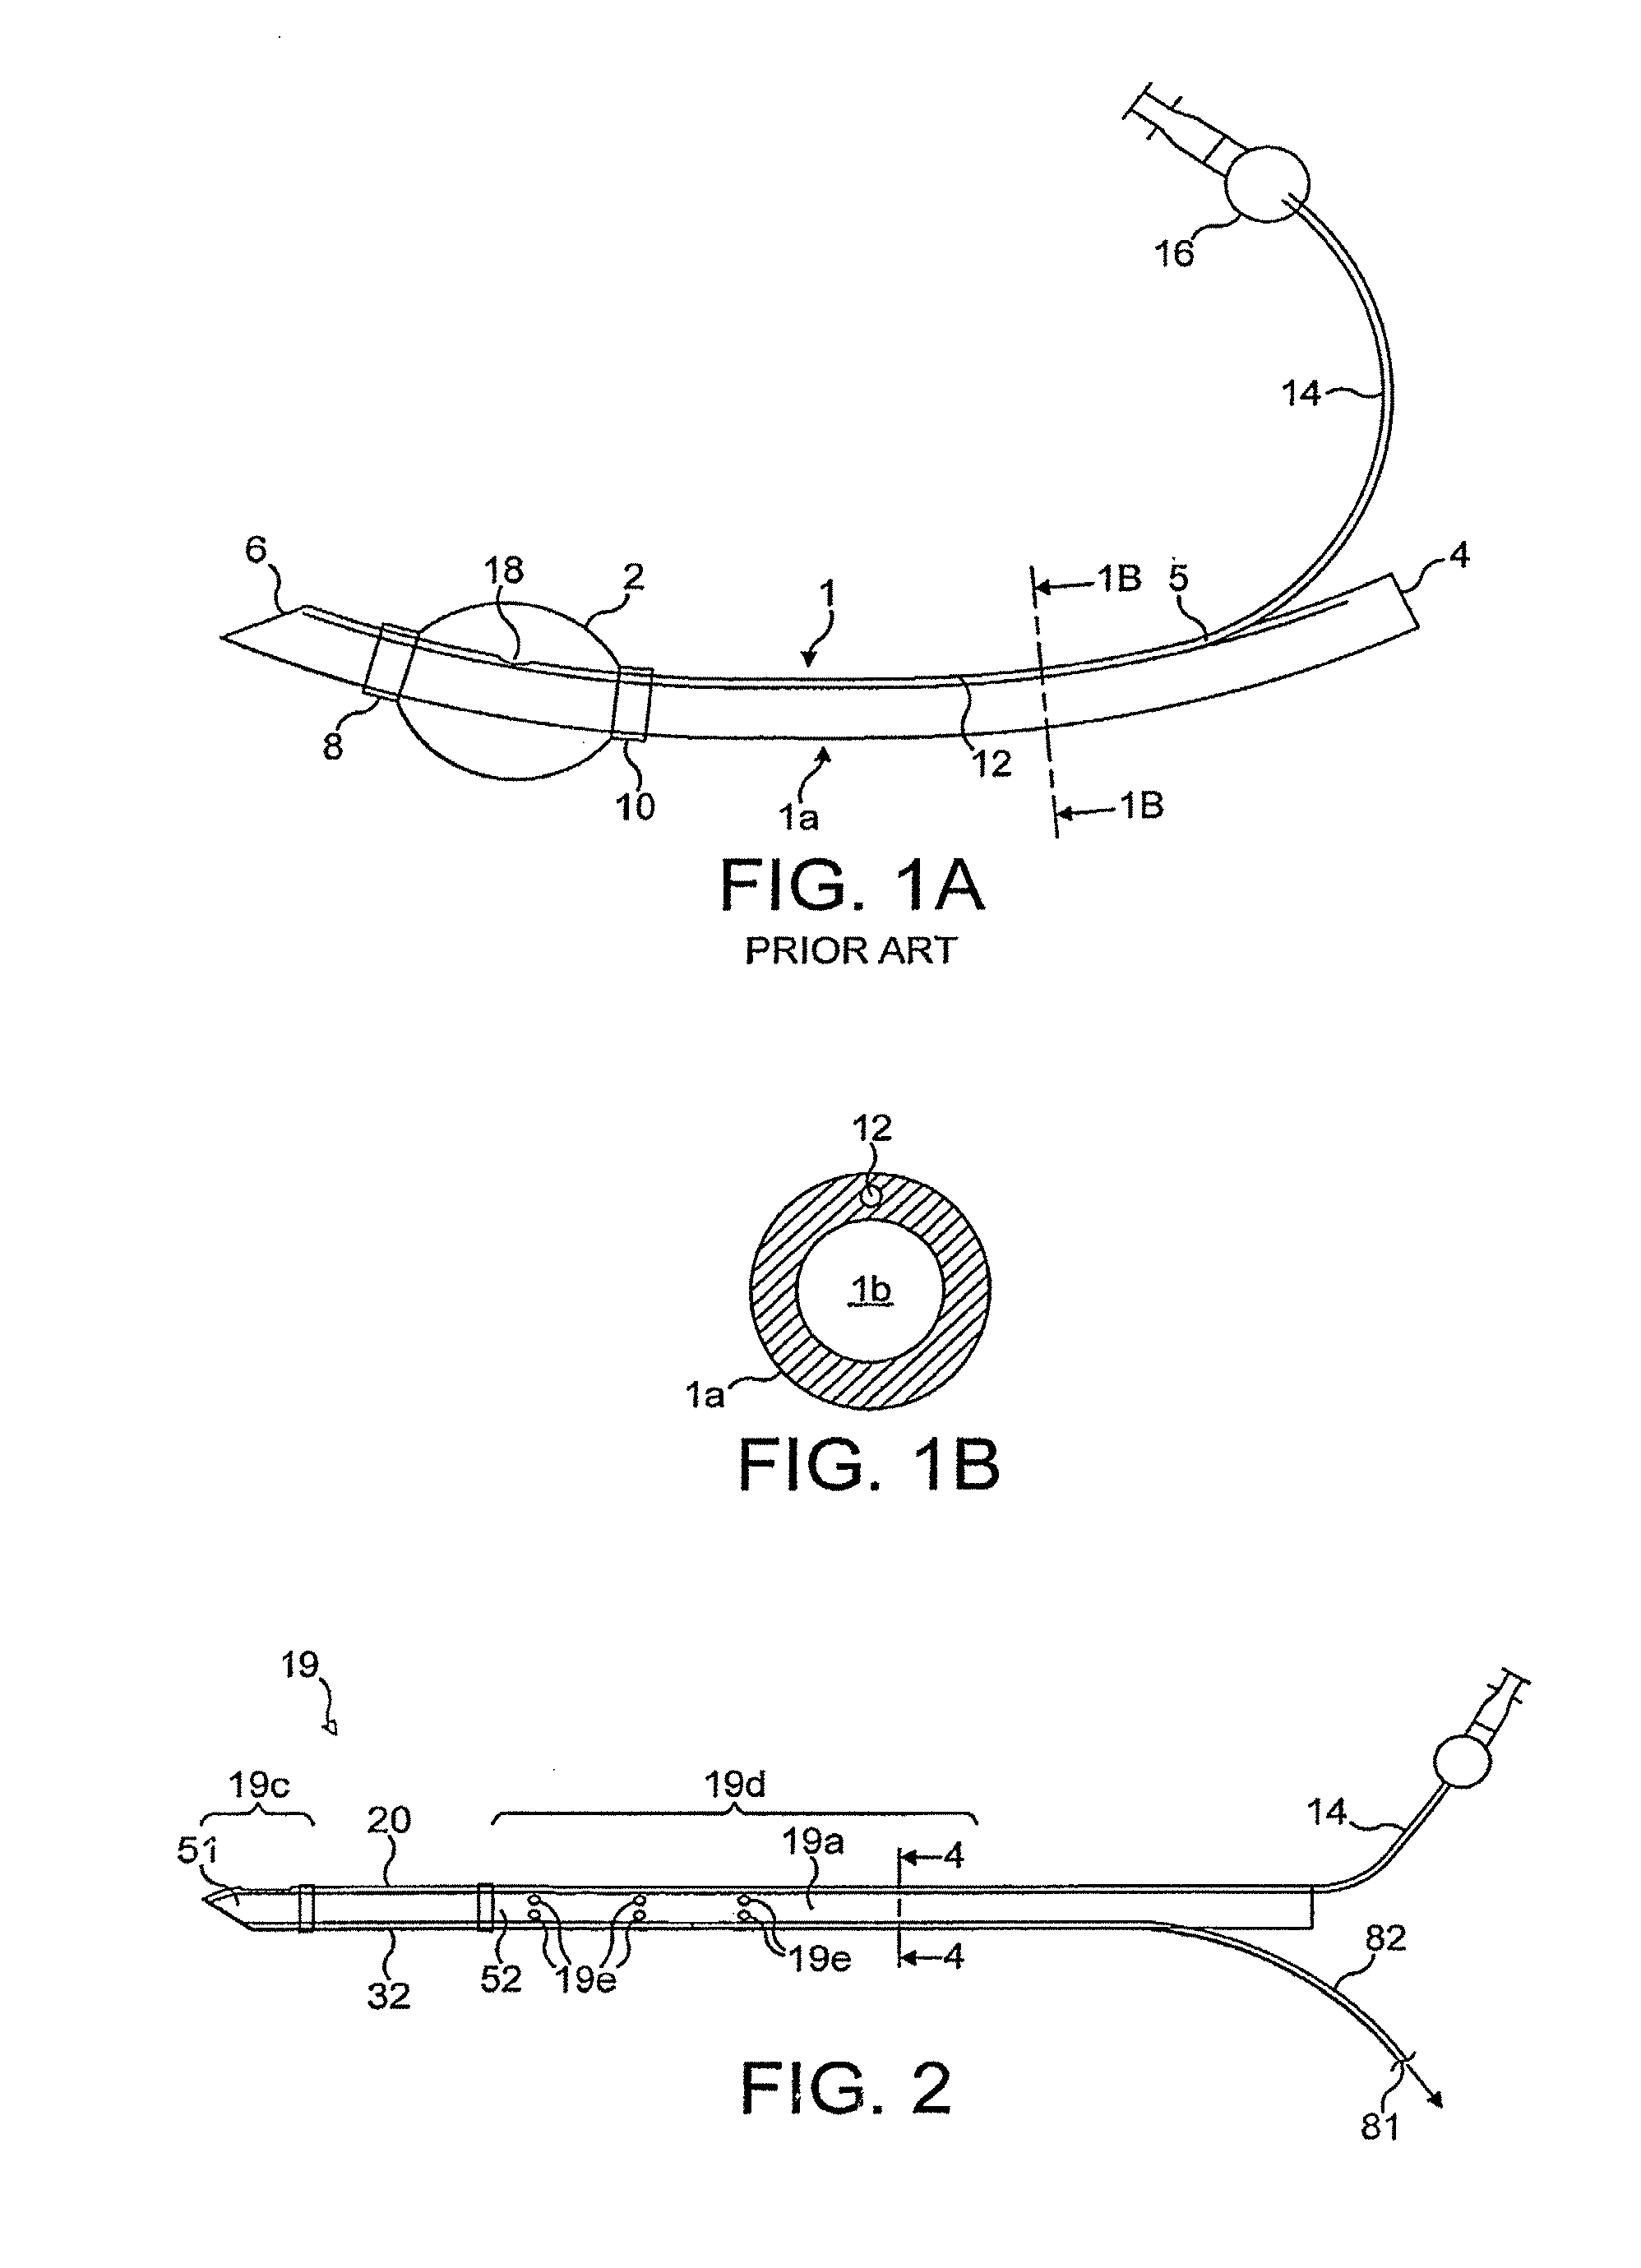 Artificial airway apparatus